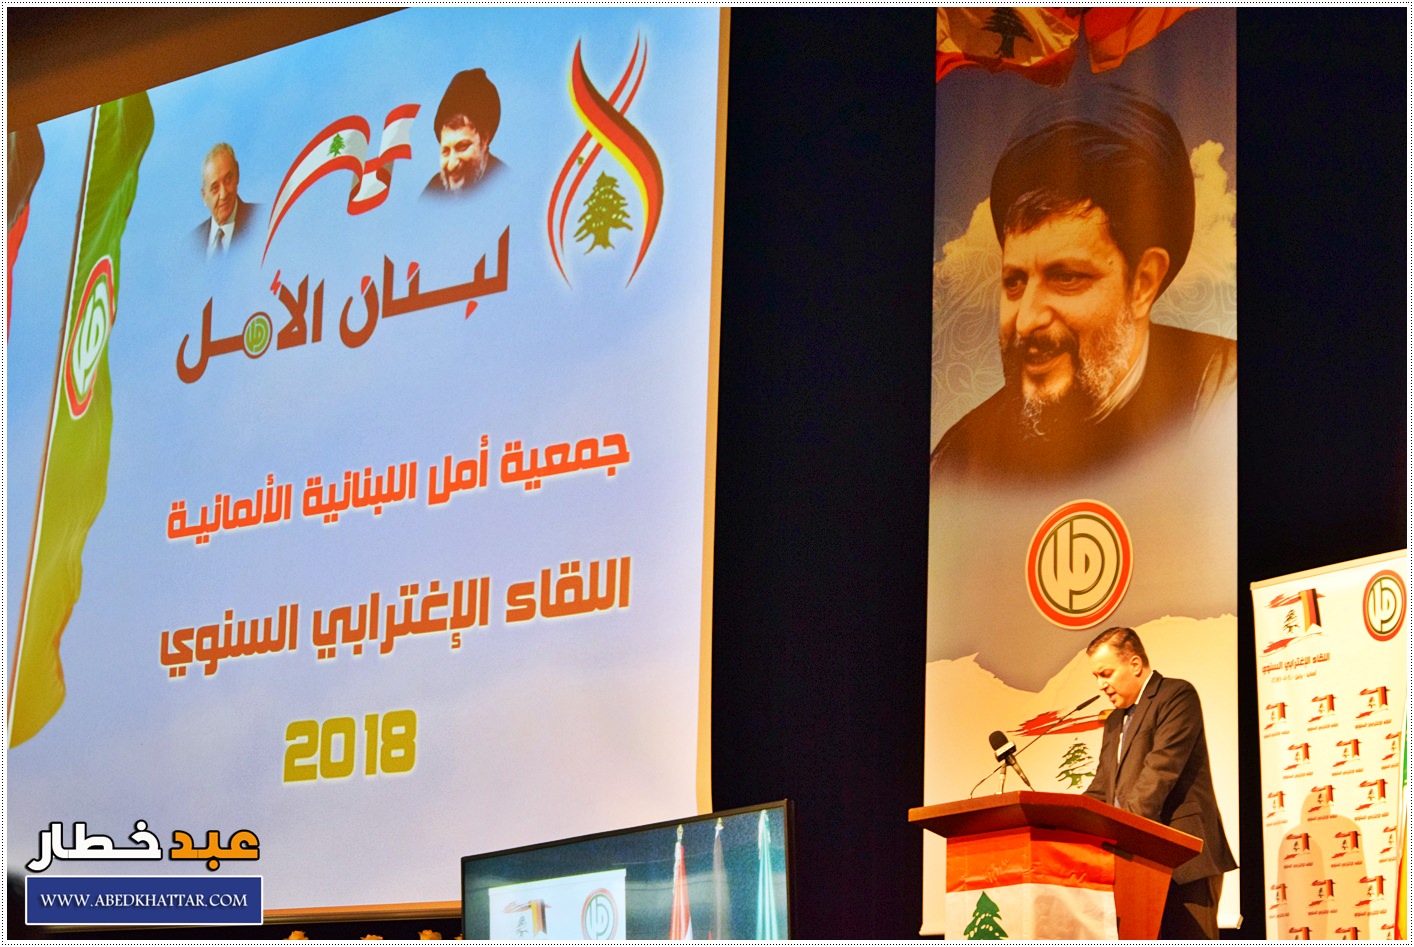 كلمة الرئيس نبيه بري خلال اللقاء السنوي للإغتراب اللبناني الذي أقامته حركة أمل في برلين